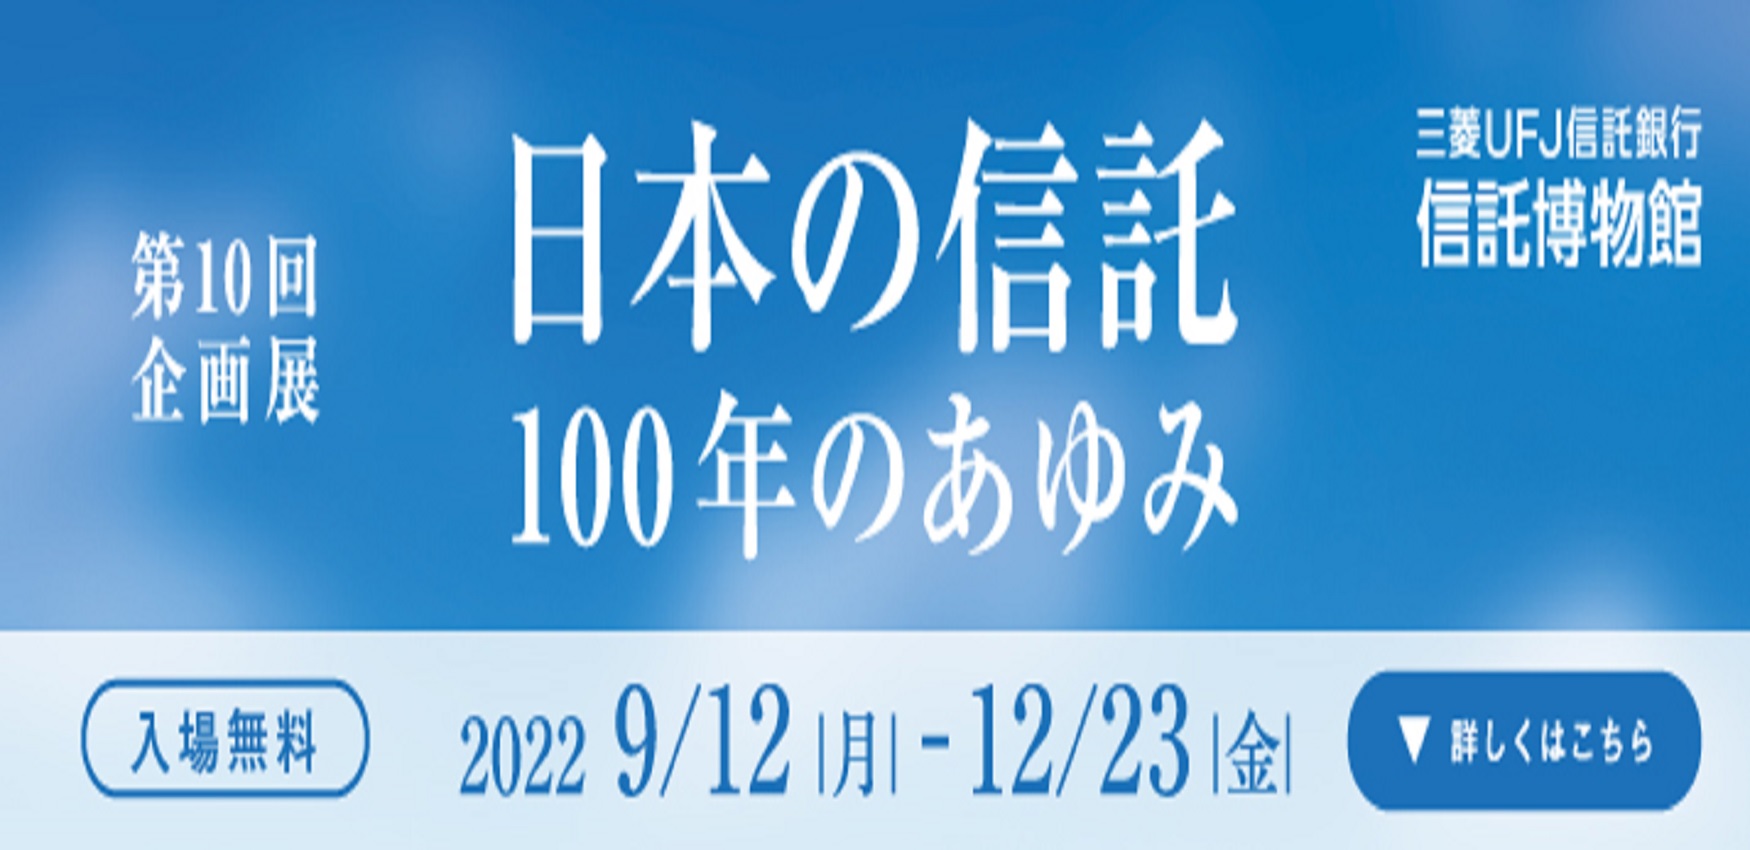 第10回企画展 日本の信託100年のあゆみ 三菱ＵＦＪ信託銀行信託博物館 入場無料 2022 9/12 月 - 12/23 金 詳しくはこちら